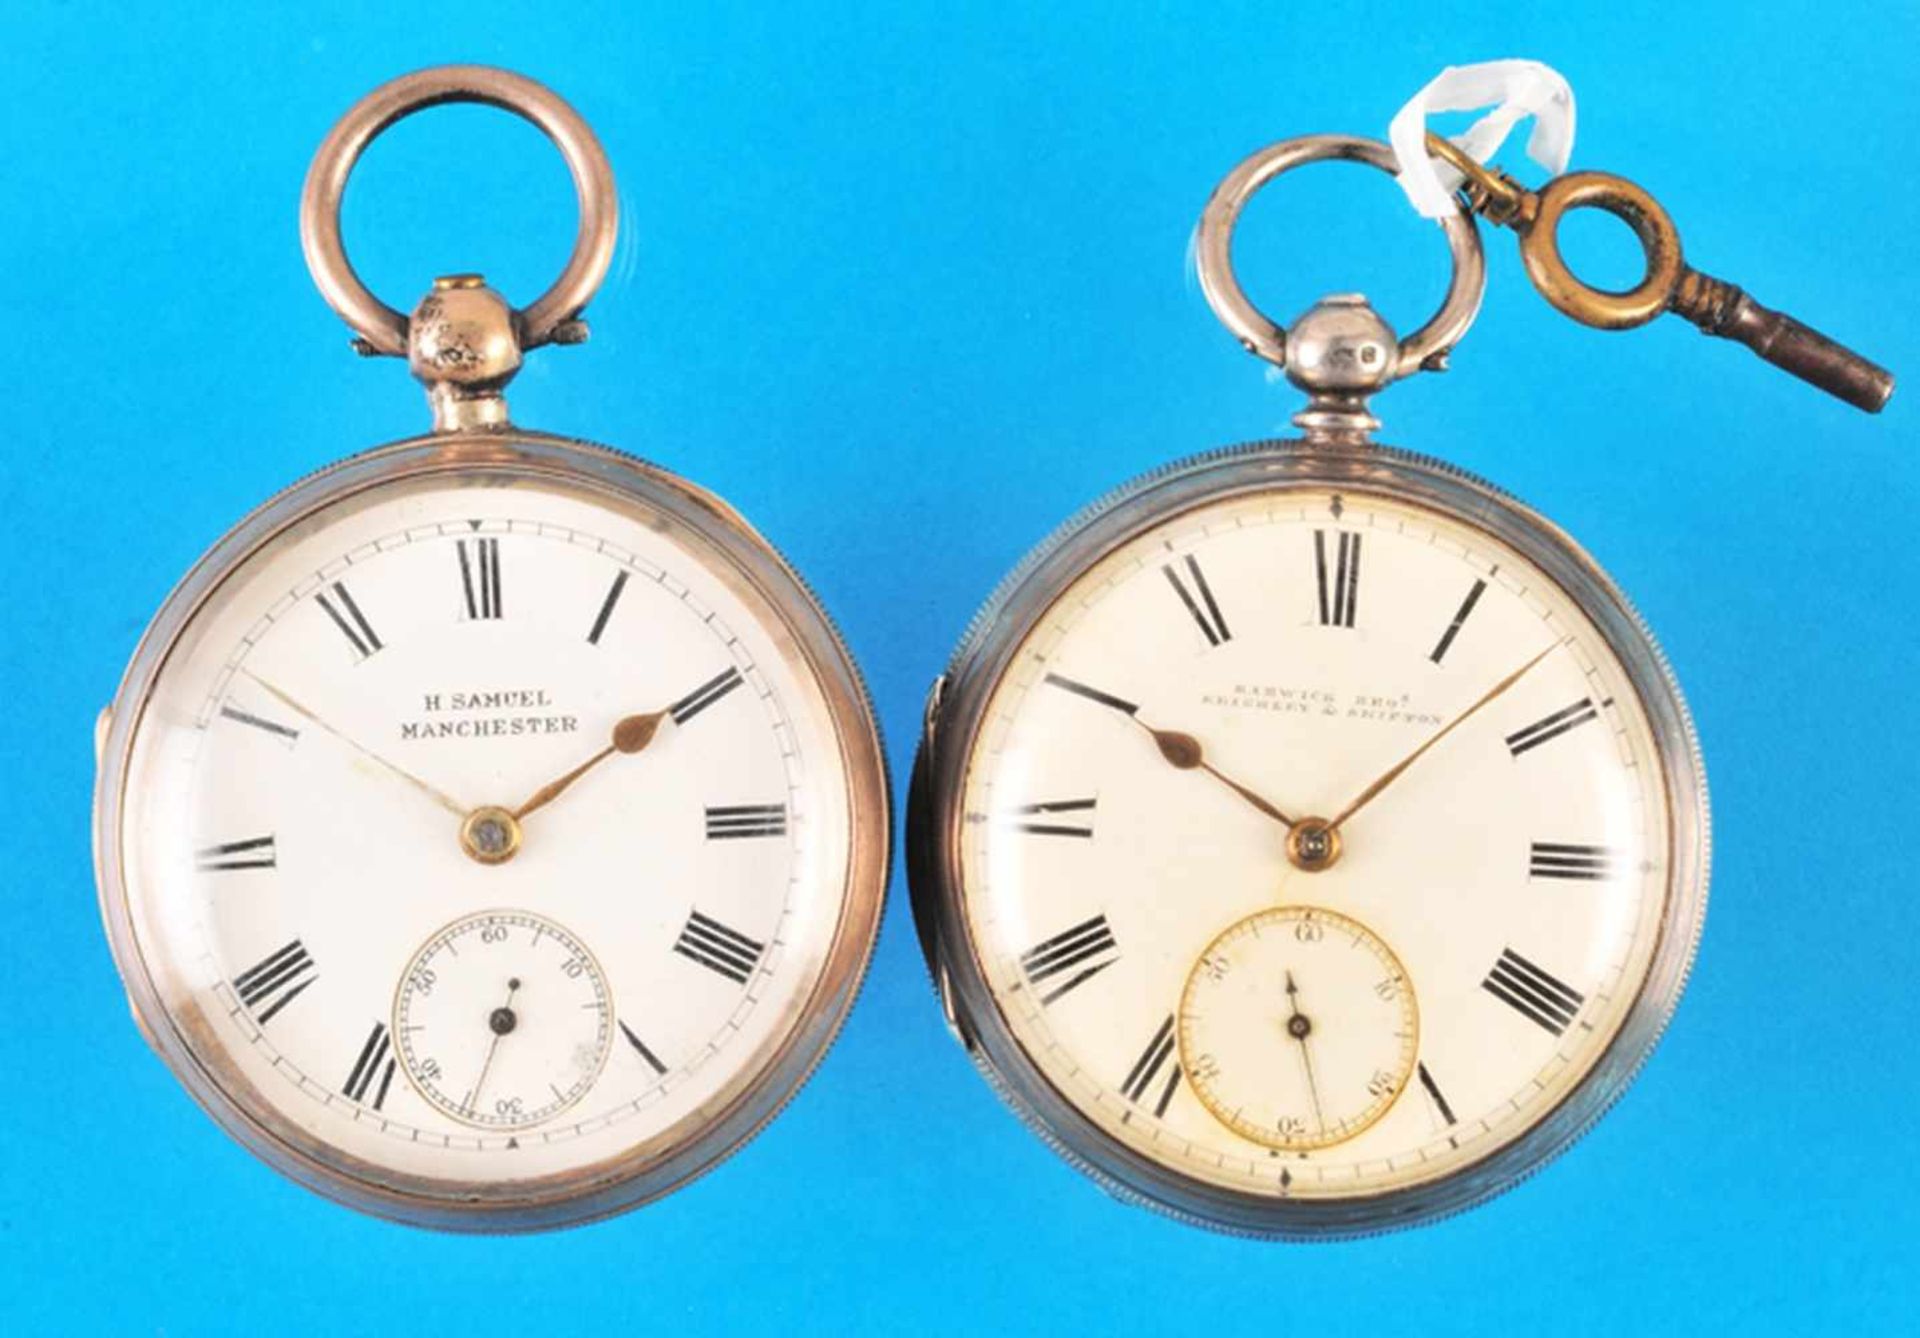 Bundle with 2 english silver pocket watchesKonvolut mit 2 englischen Silbertaschenuhren, beide mit